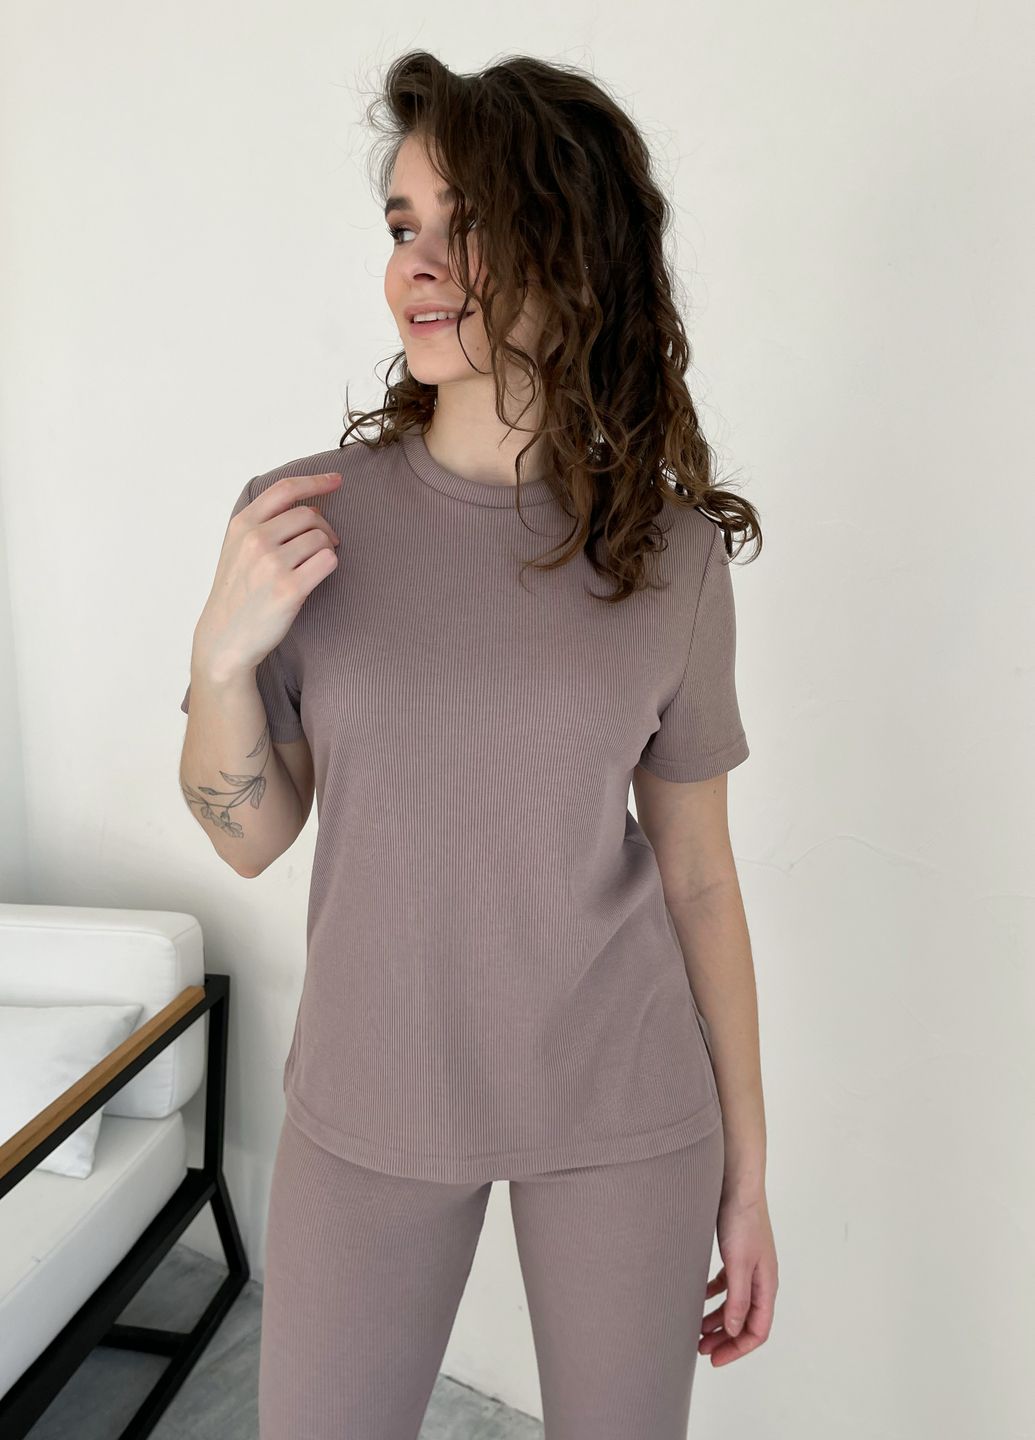 Купить Костюм женский в рубчик футболка с лосинами бежевый Merlini Сантино 100000504, размер L-2XL (46-50) в интернет-магазине